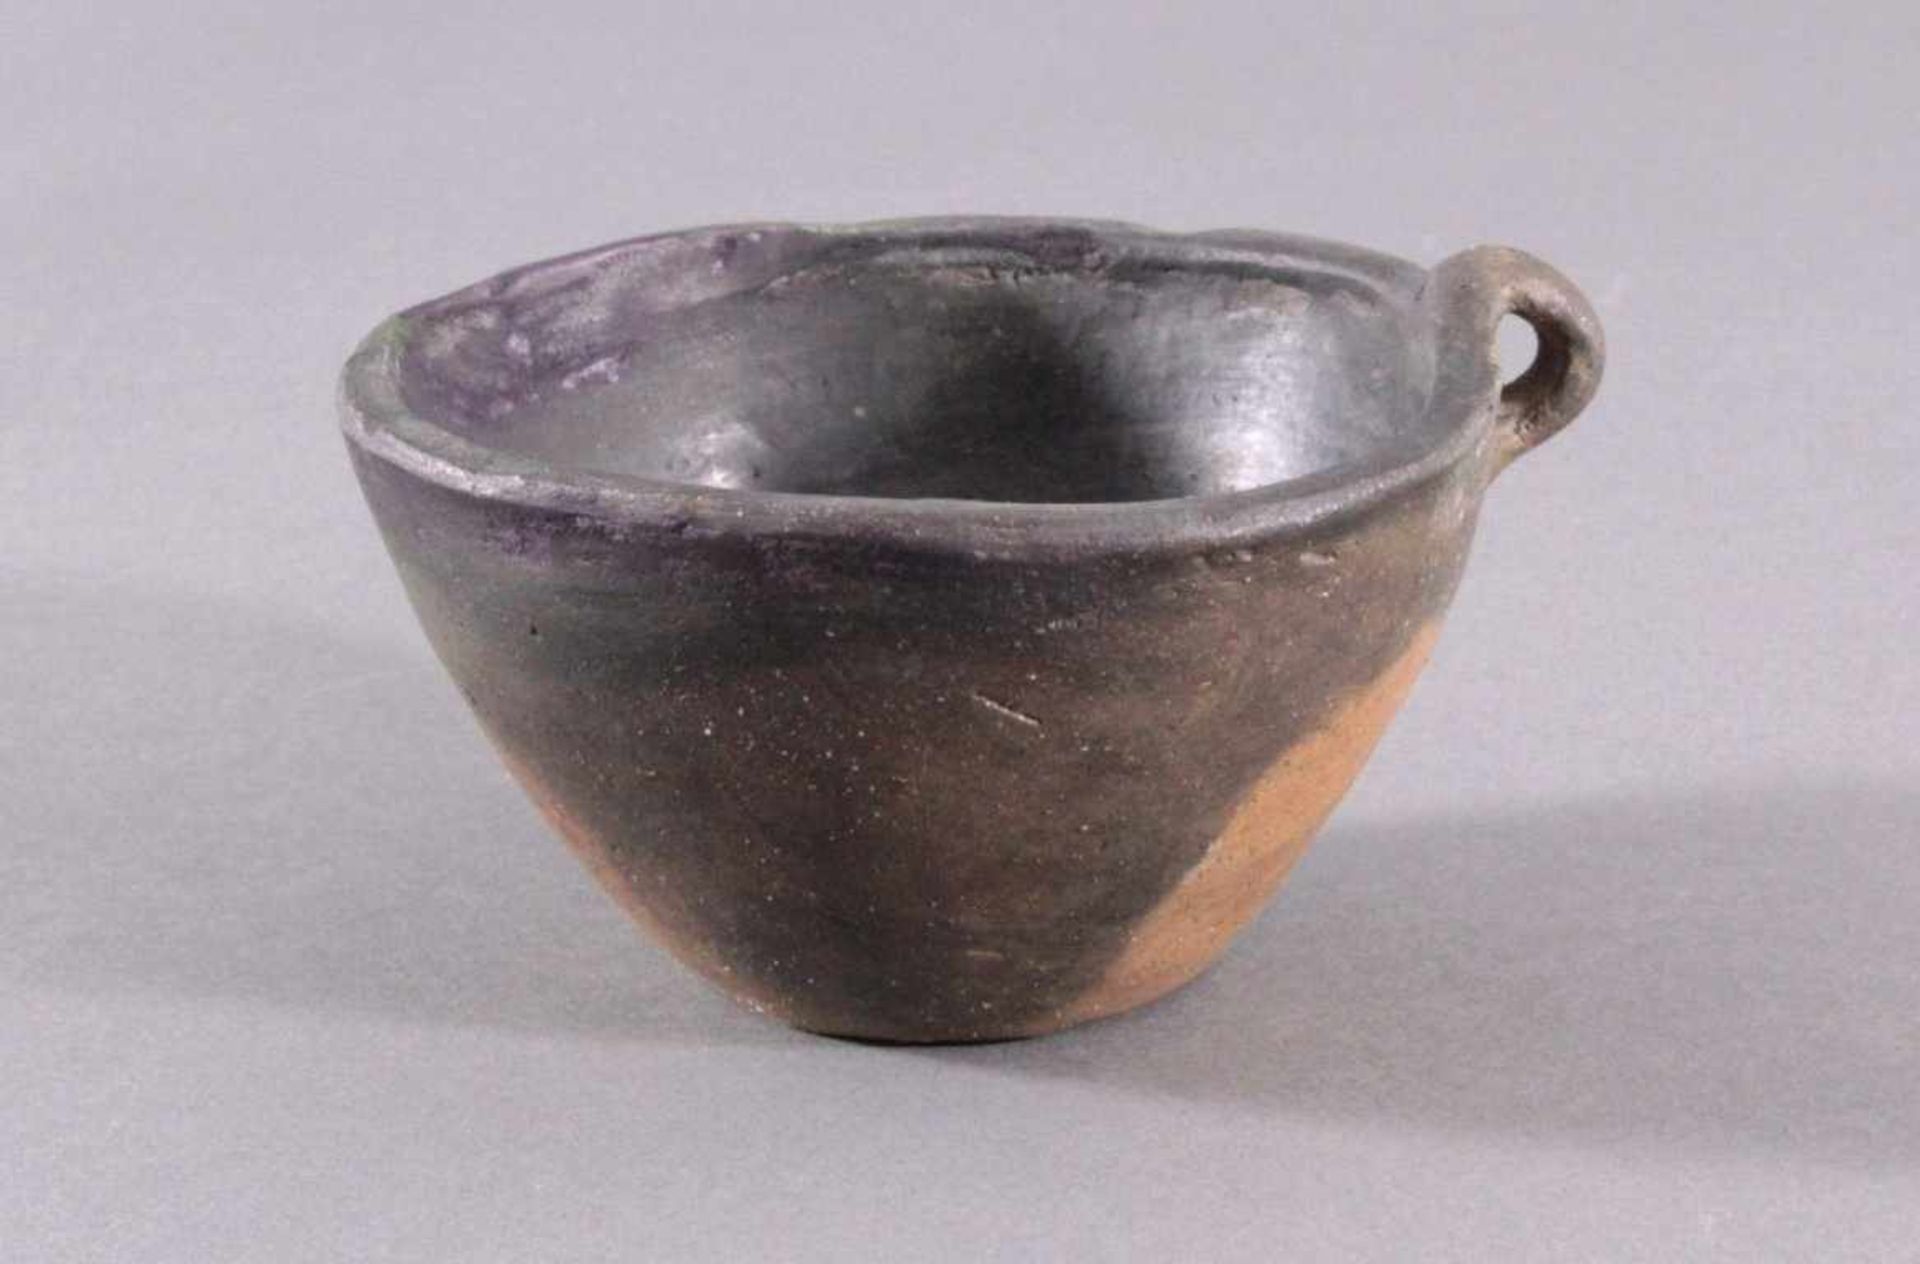 Henkelgefäß - Lausitzer Kultur 900-500 v. Chr.Tassenförmiges Einhenkelgefäß, aus dunkelbraunem Ton,